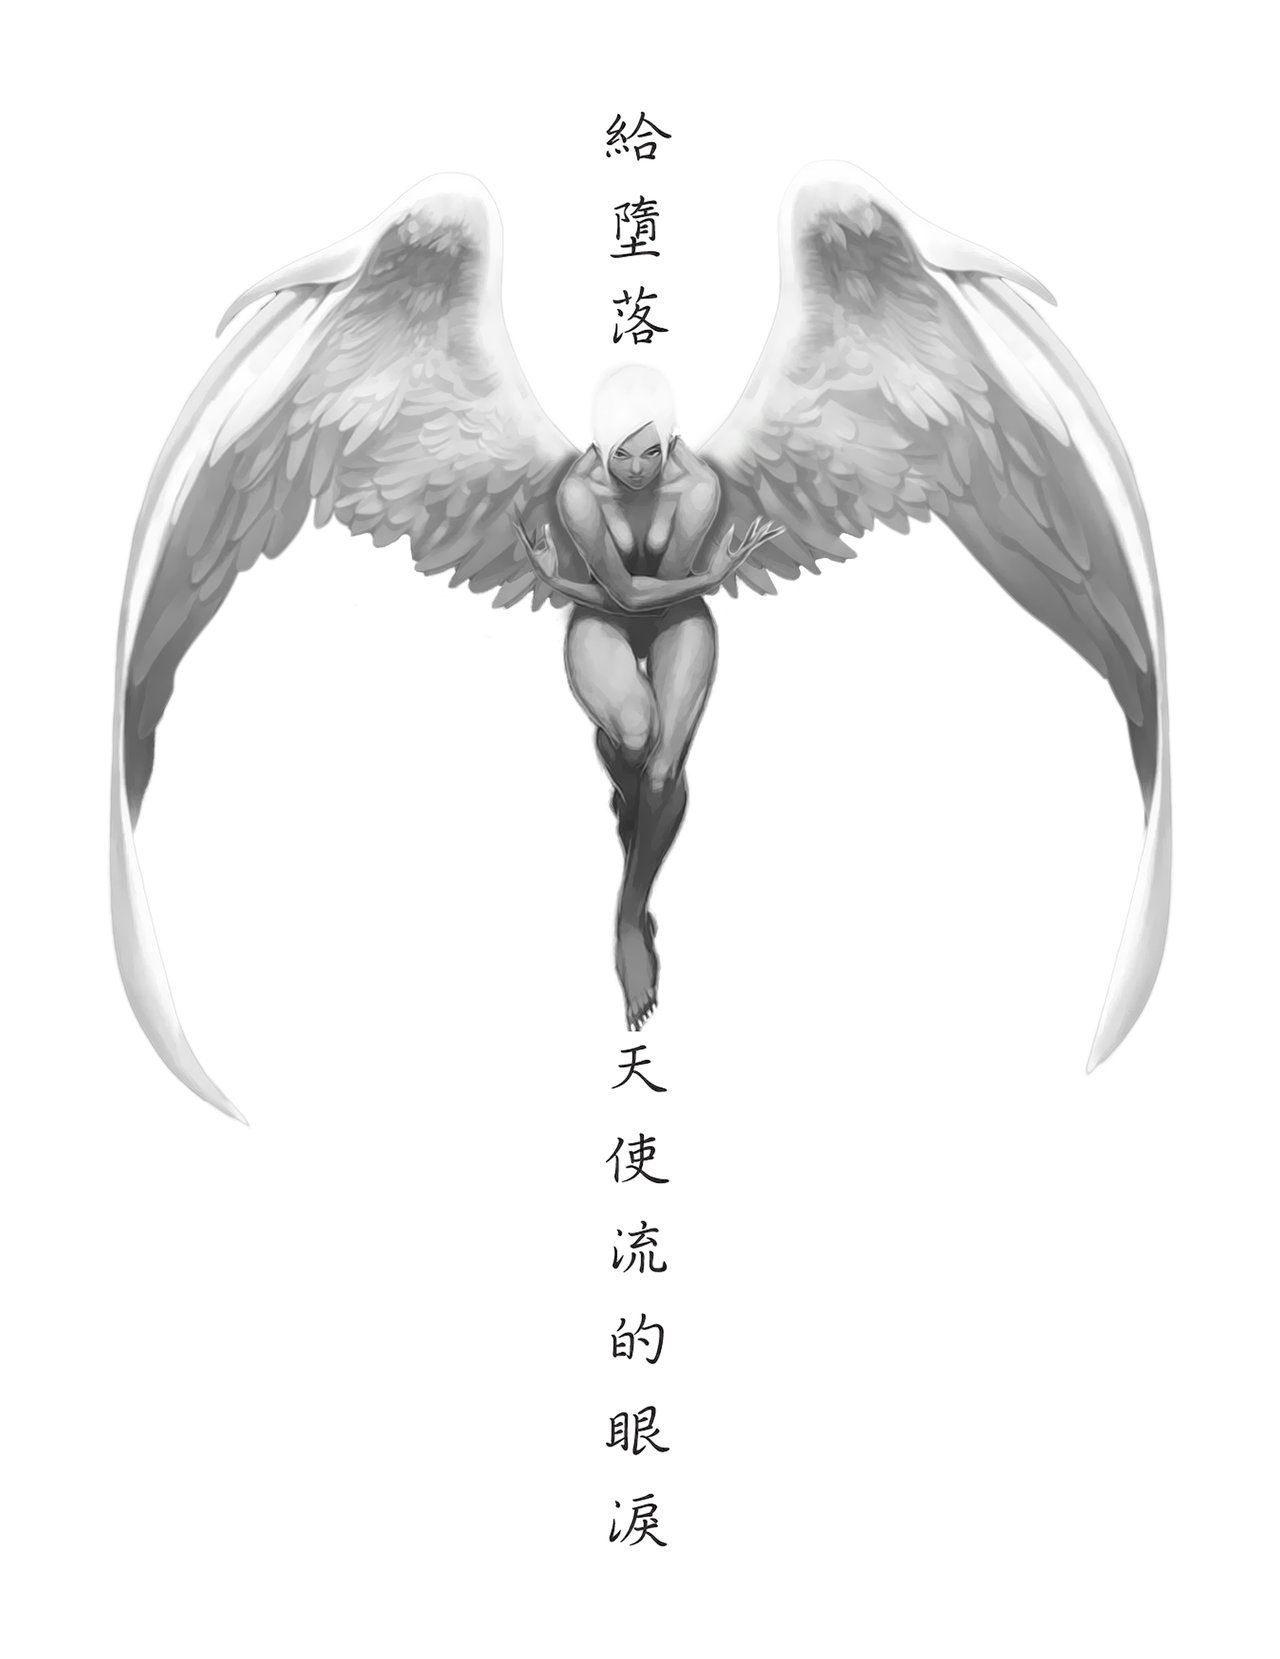 Grey Flying Fallen Angel Tattoo Design Idea